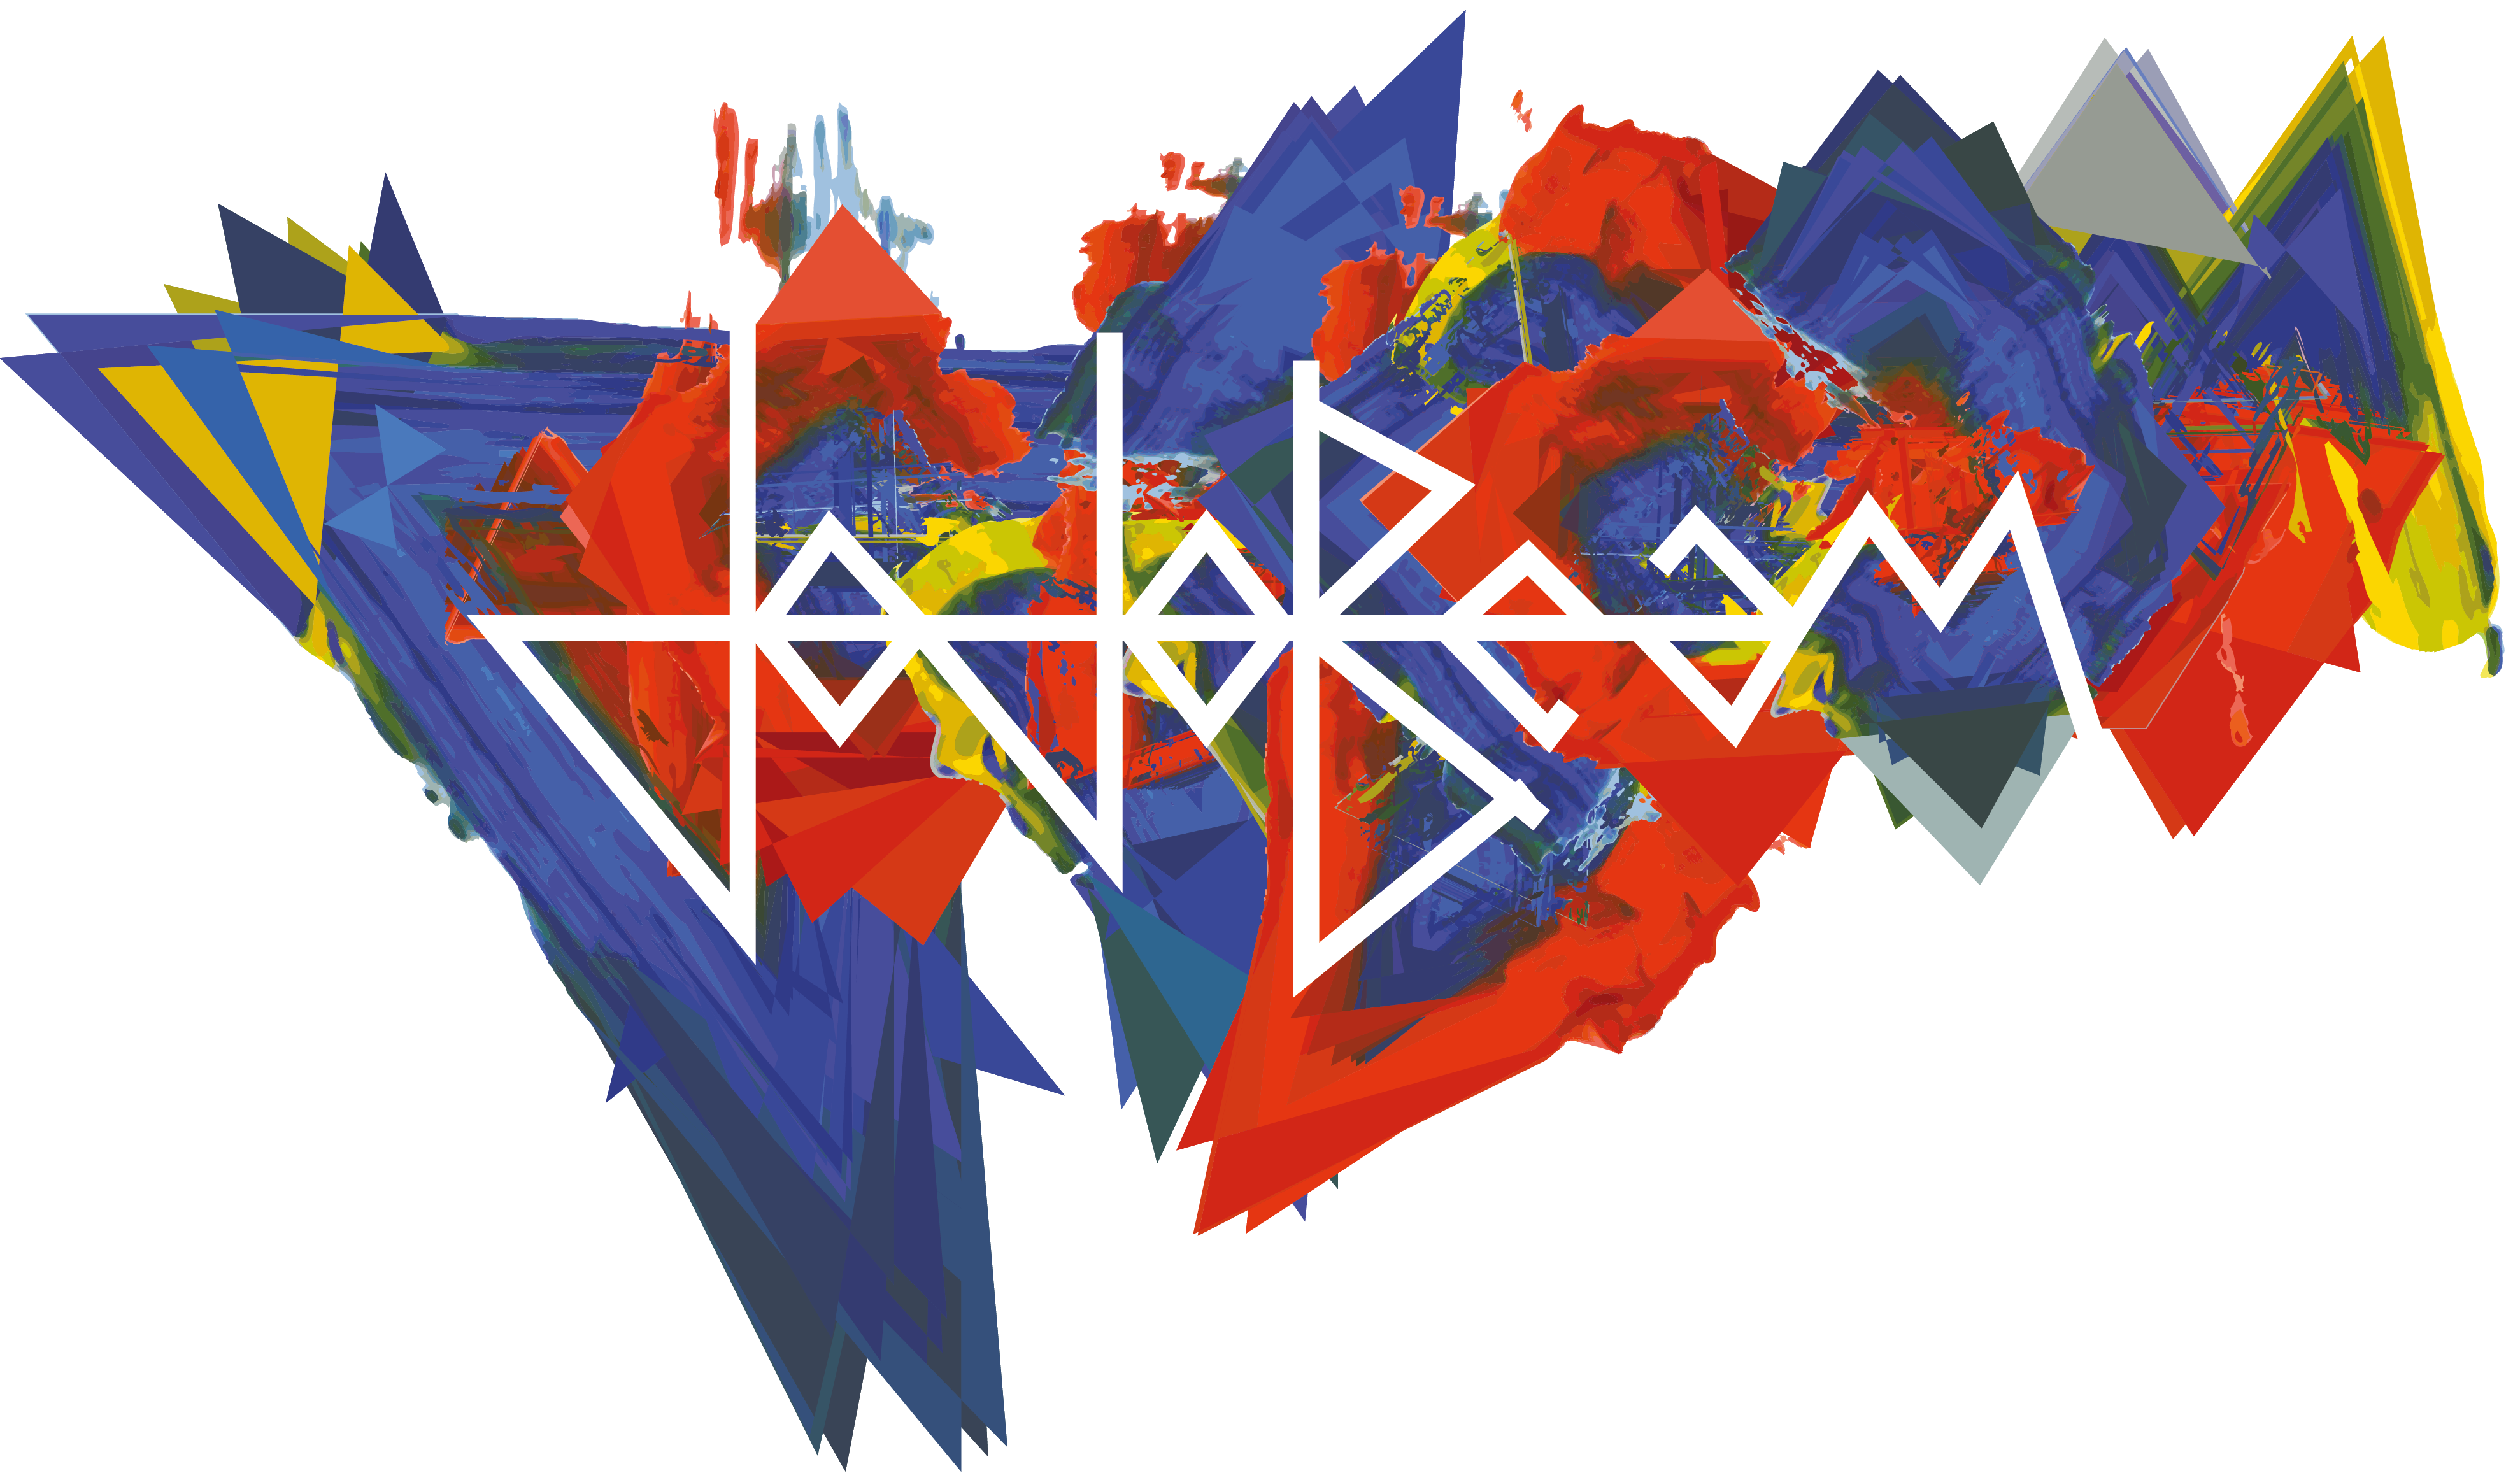 logo du groupe de musiques actuelles Jojobeam dans une version artistique colorée